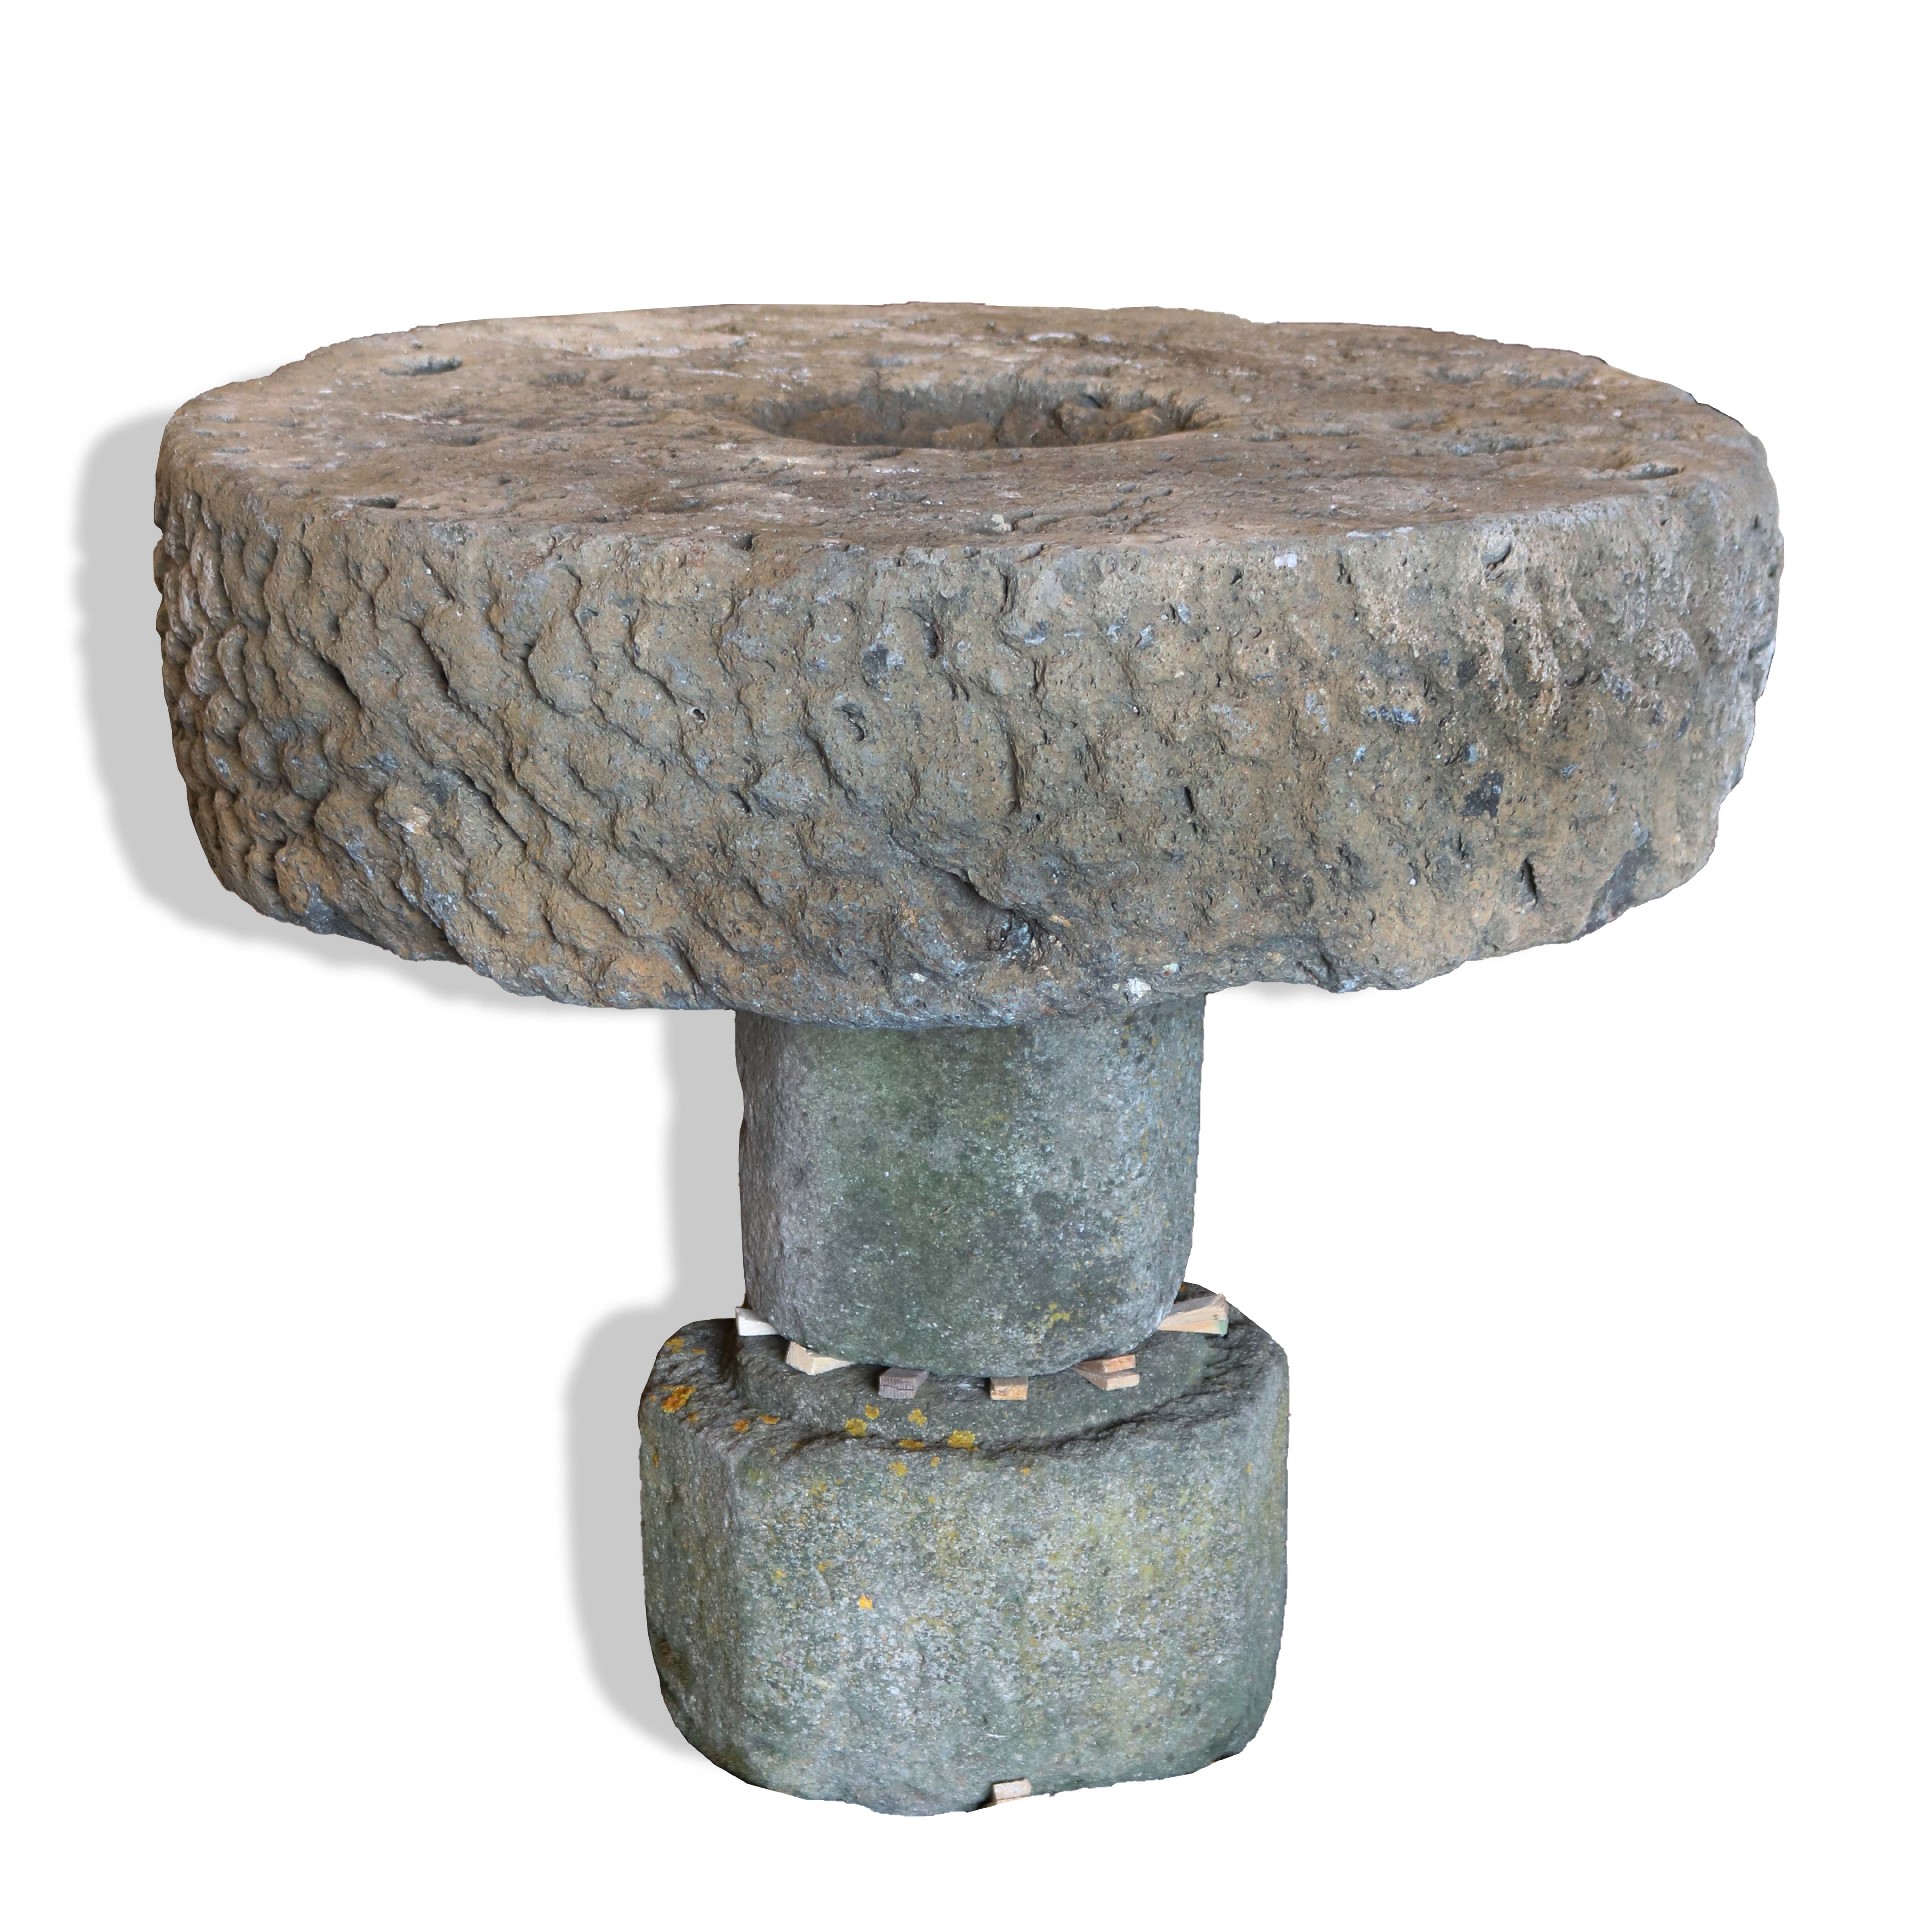 Tavolo antico in pietra. - Tavoli in vari materiali - Tavoli e complementi - Prodotti - Antichità Fiorillo